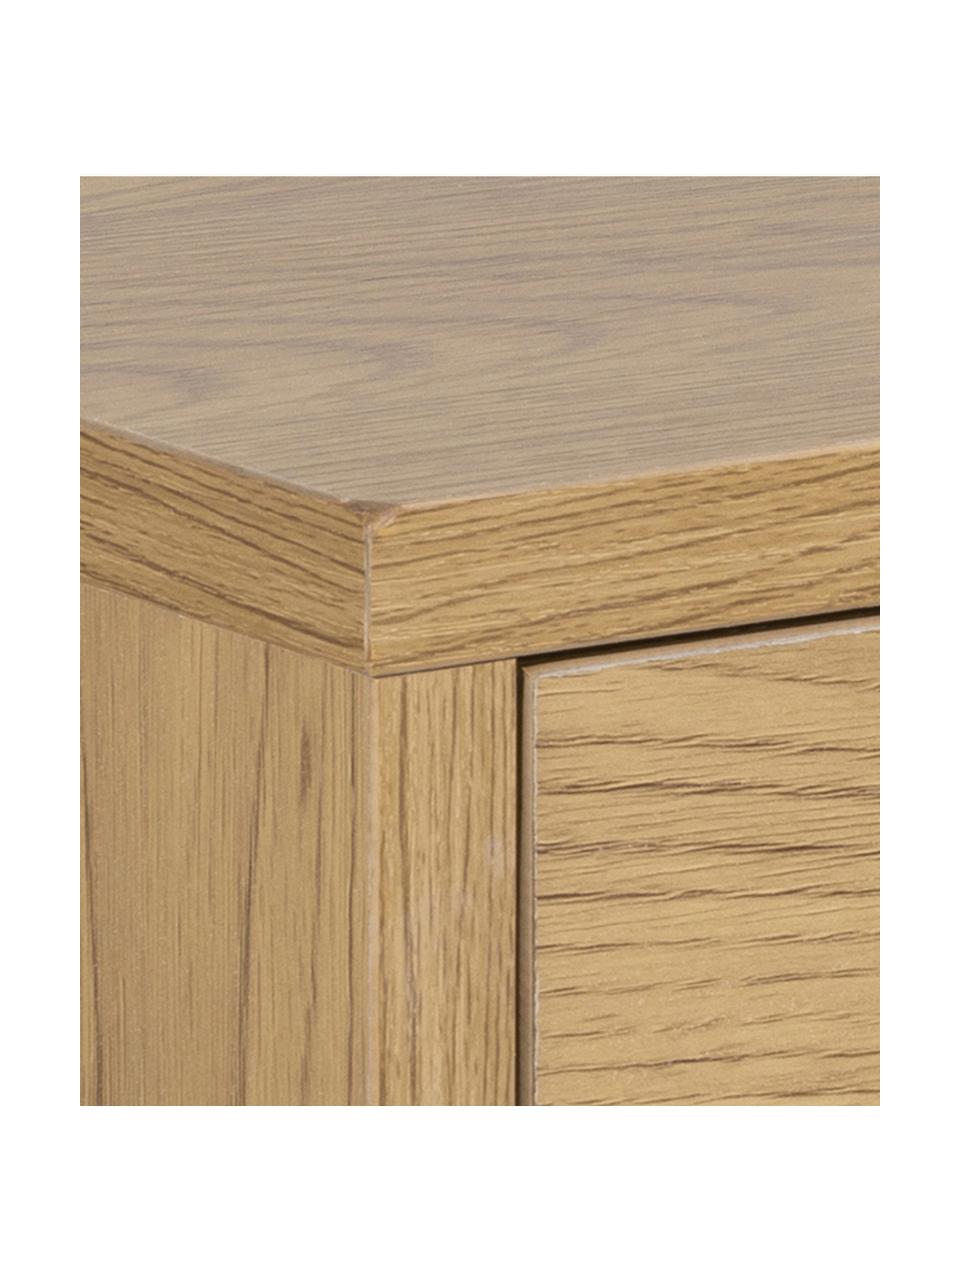 Wand-Nachttisch Cholet mit Schublade, Mitteldichte Holzfaserplatte (MDF), Holz, B 50 x H 24 cm